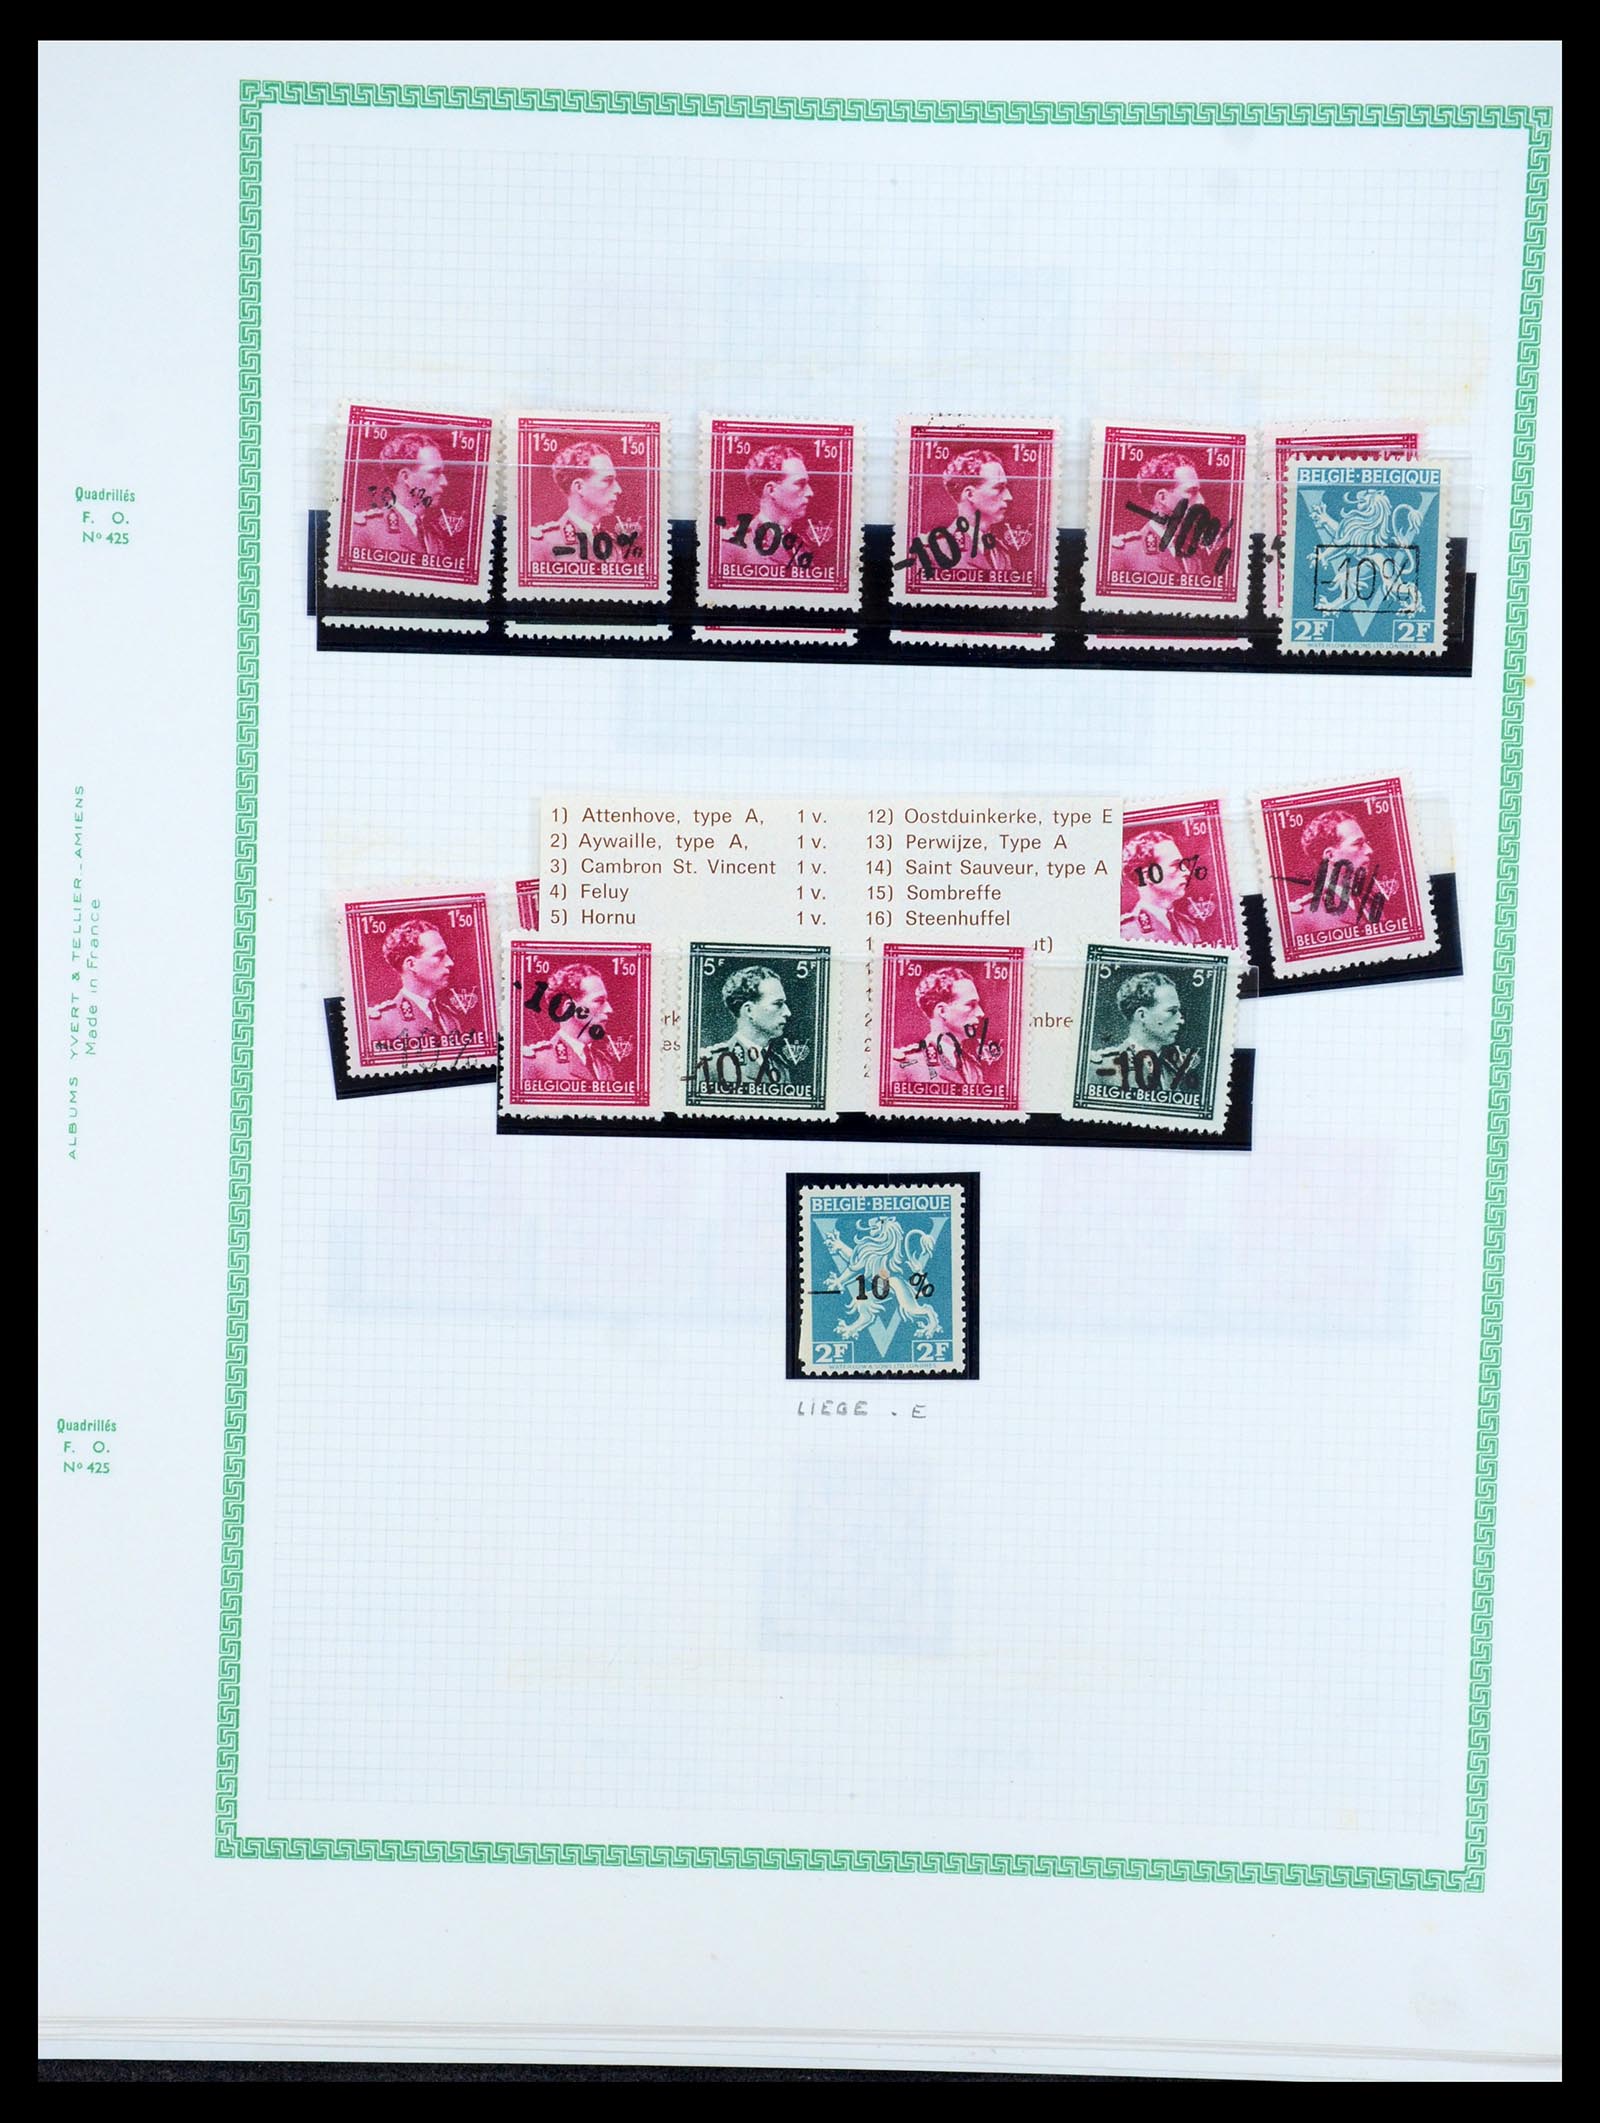 35733 187 - Stamp Collection 35733 Belgium 1946 -10% overprints.